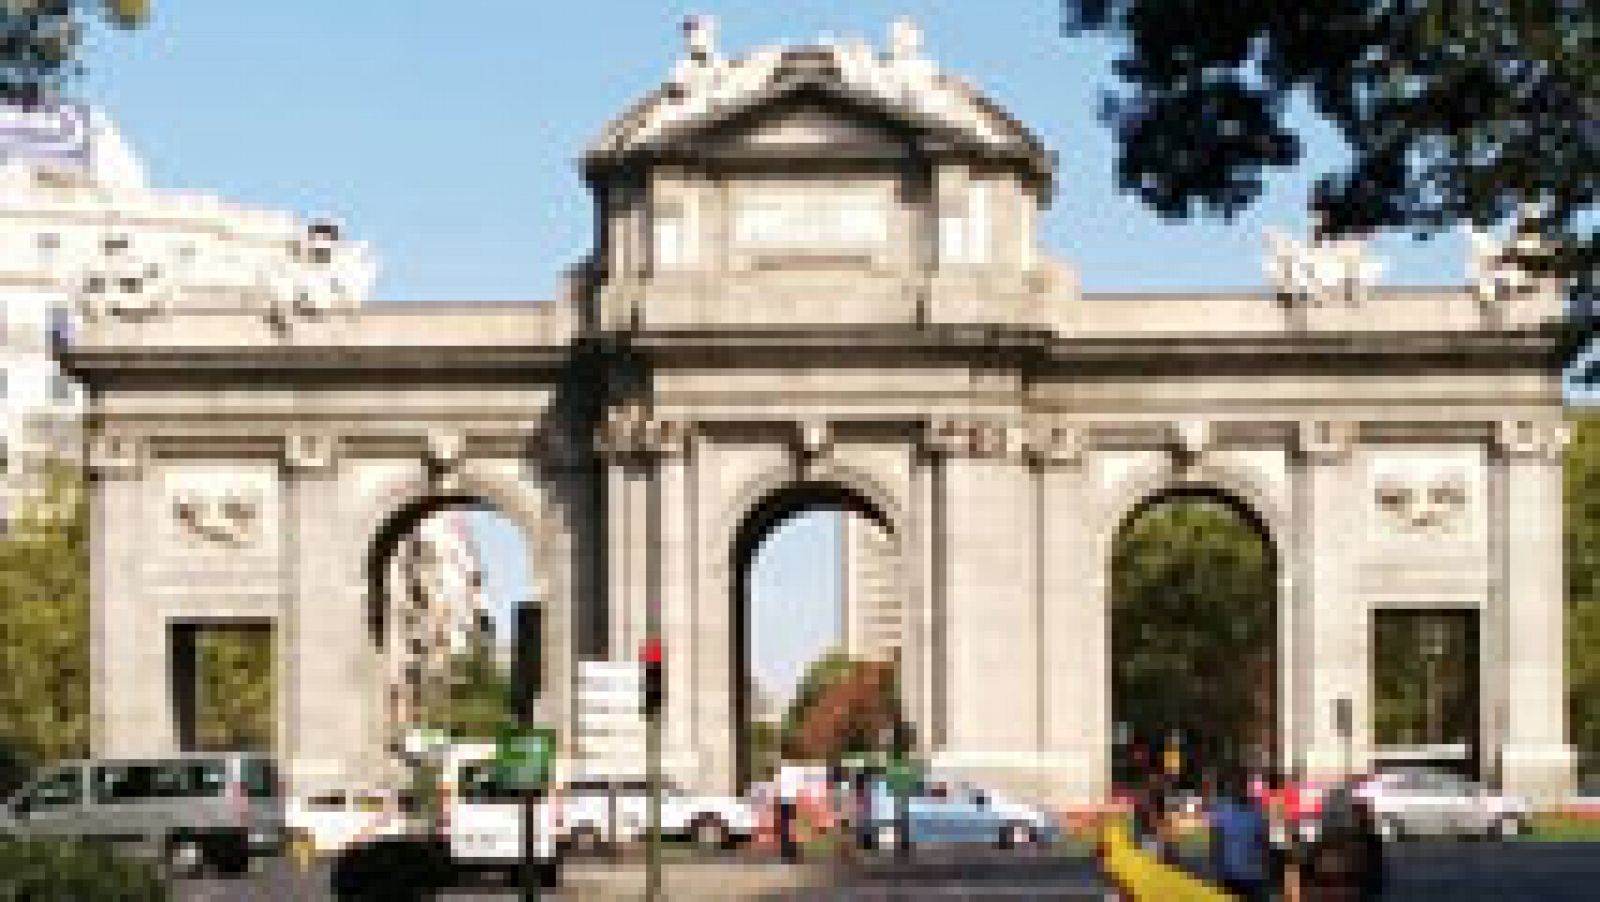 La puerta de Alcalá, uno de los monumentos más fotografiados de la capital